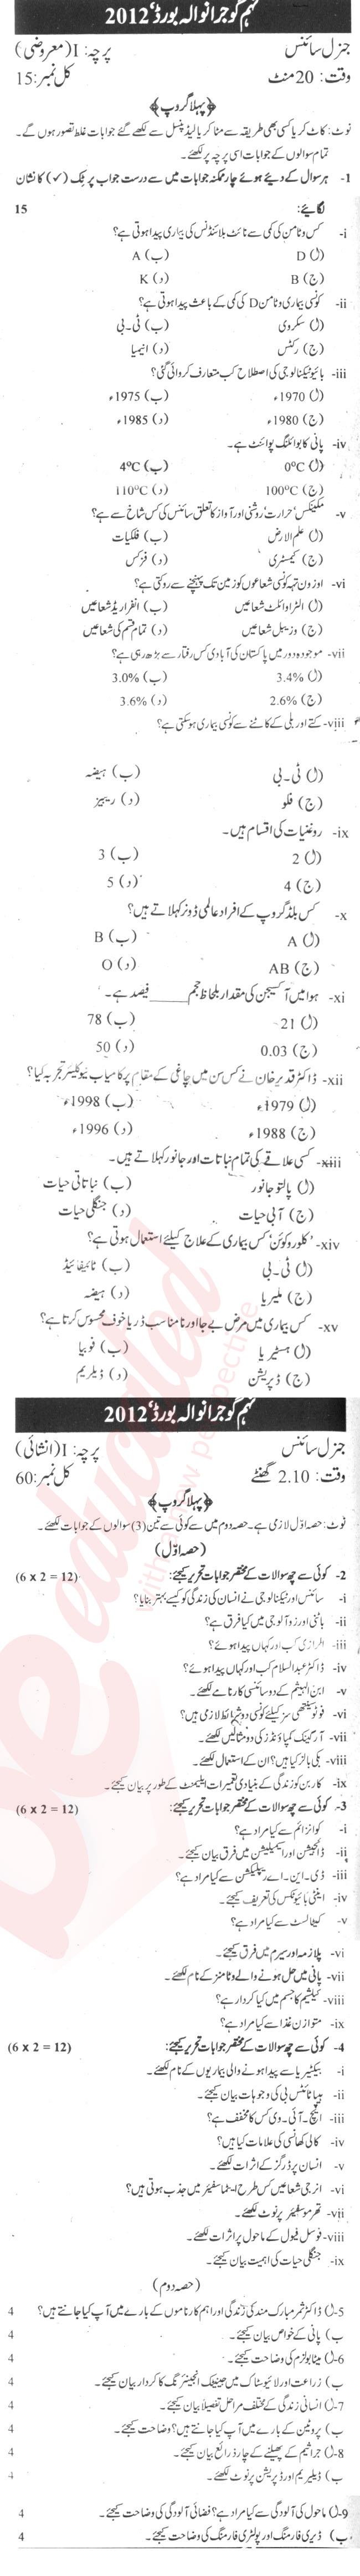 General Science 9th Urdu Medium Past Paper Group 1 BISE Gujranwala 2012